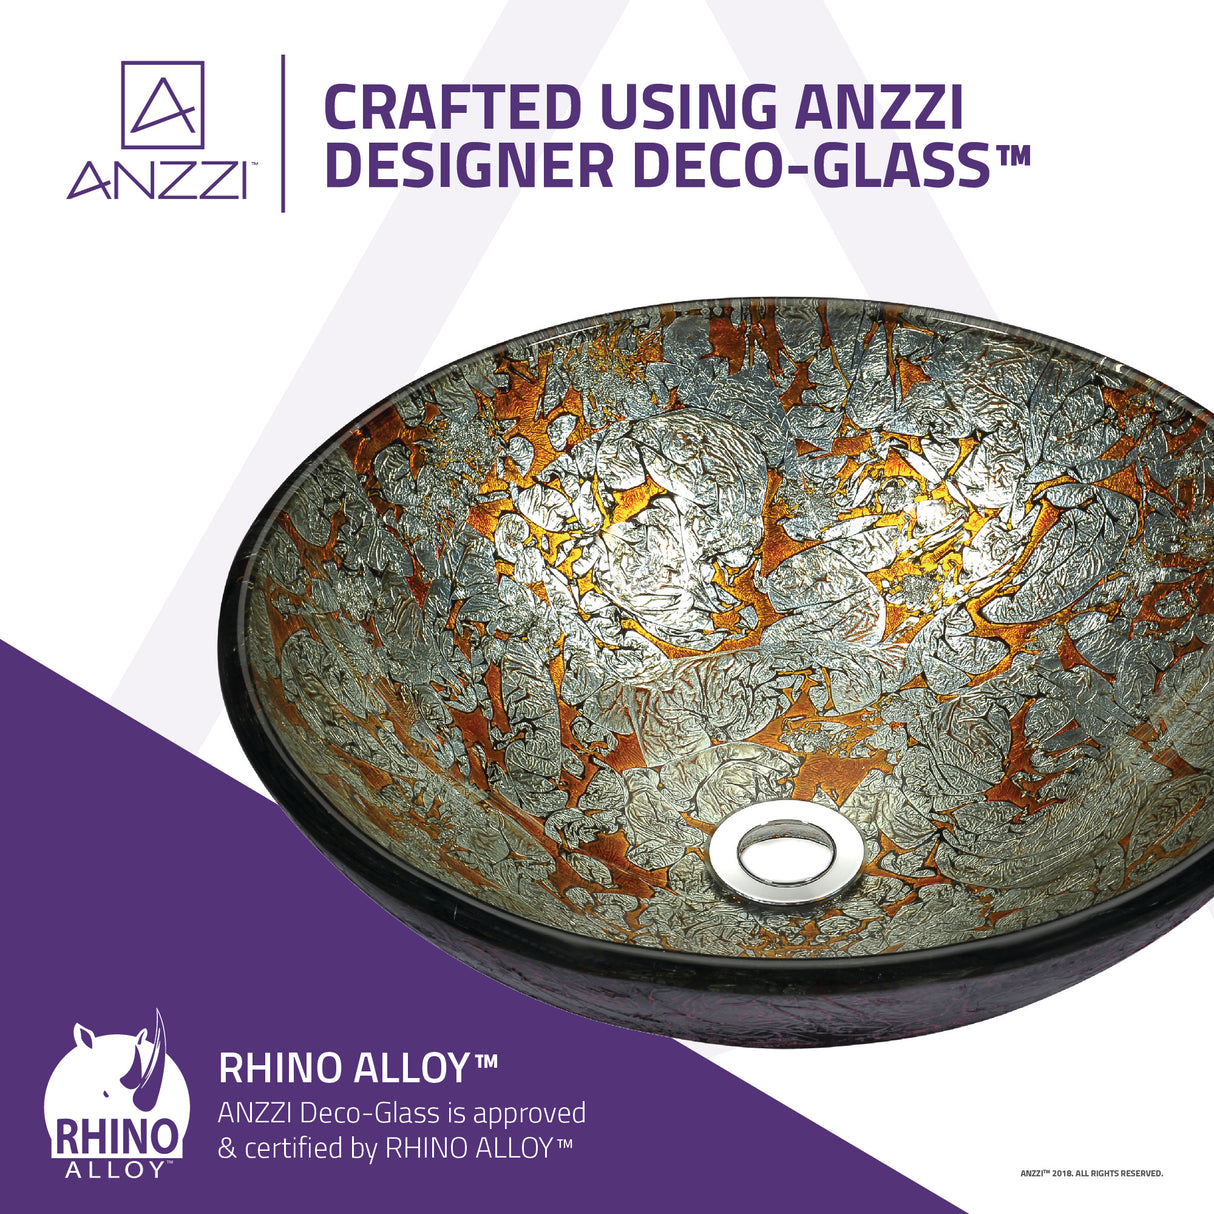 ANZZI LS-AZ163 Stellar Series Deco-Glass Vessel Sink in Arctic Blaze